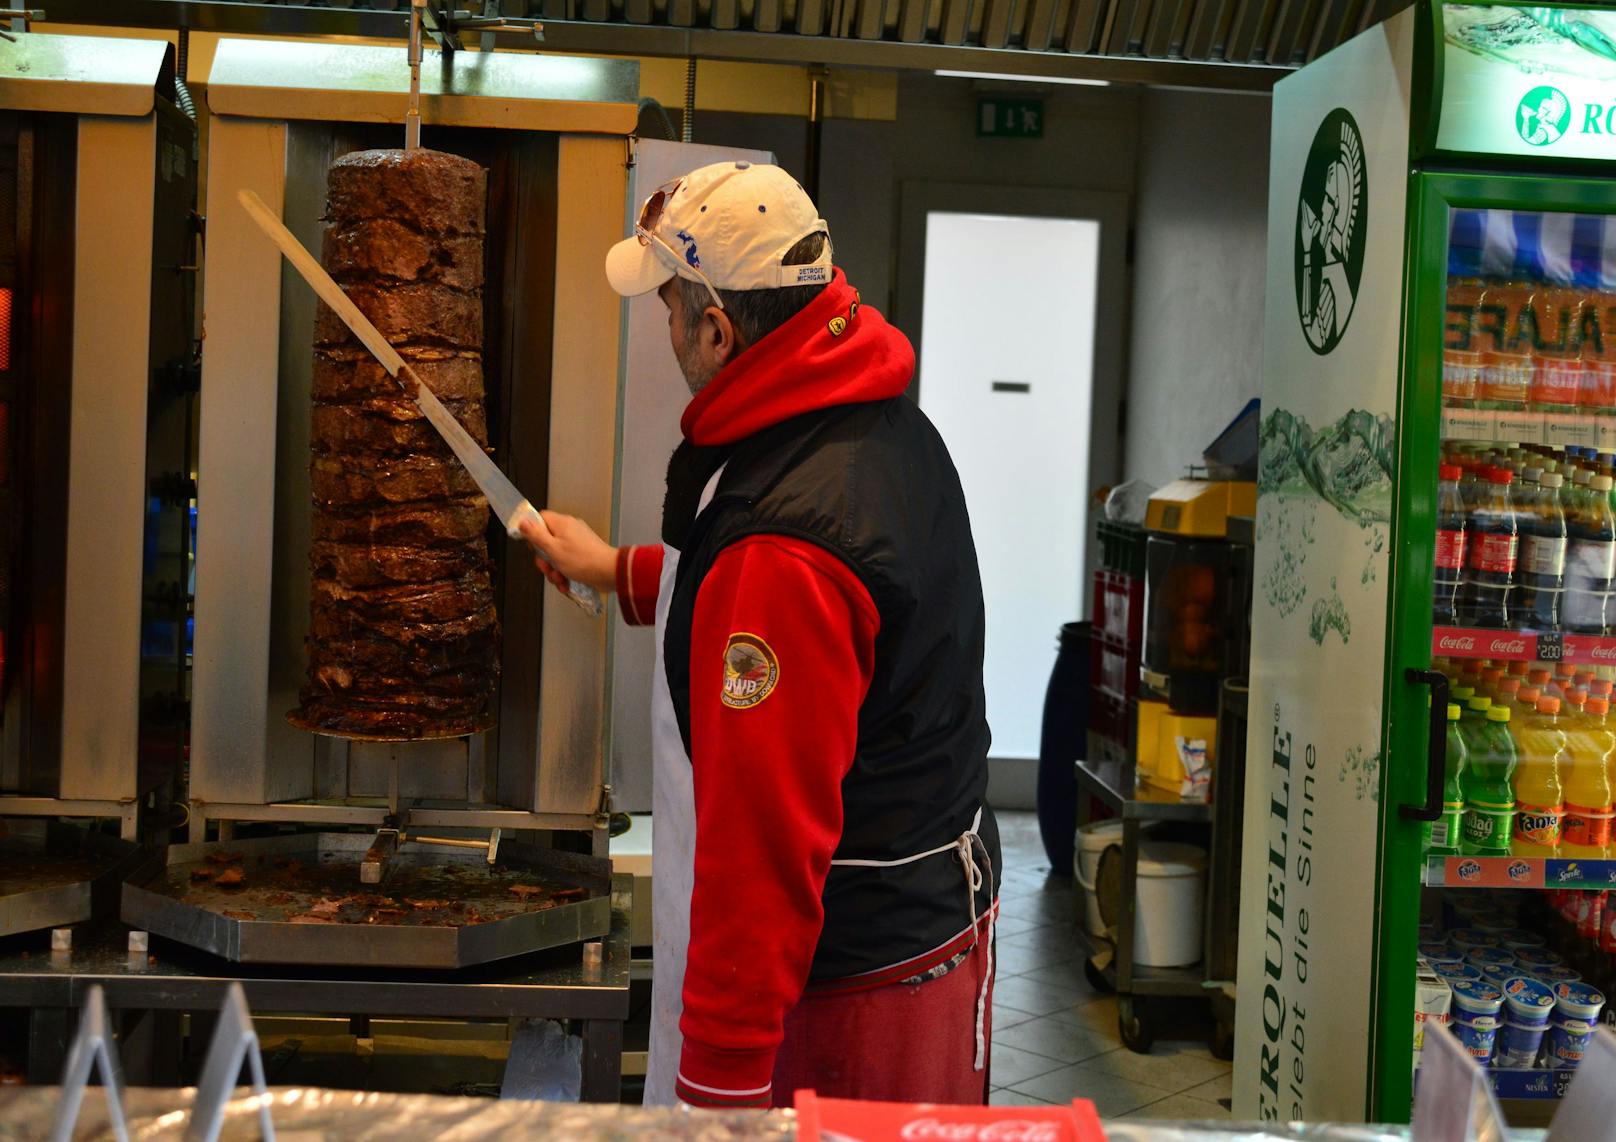 Meistgesucht in der Corona-Krise in Wien: Kebab.